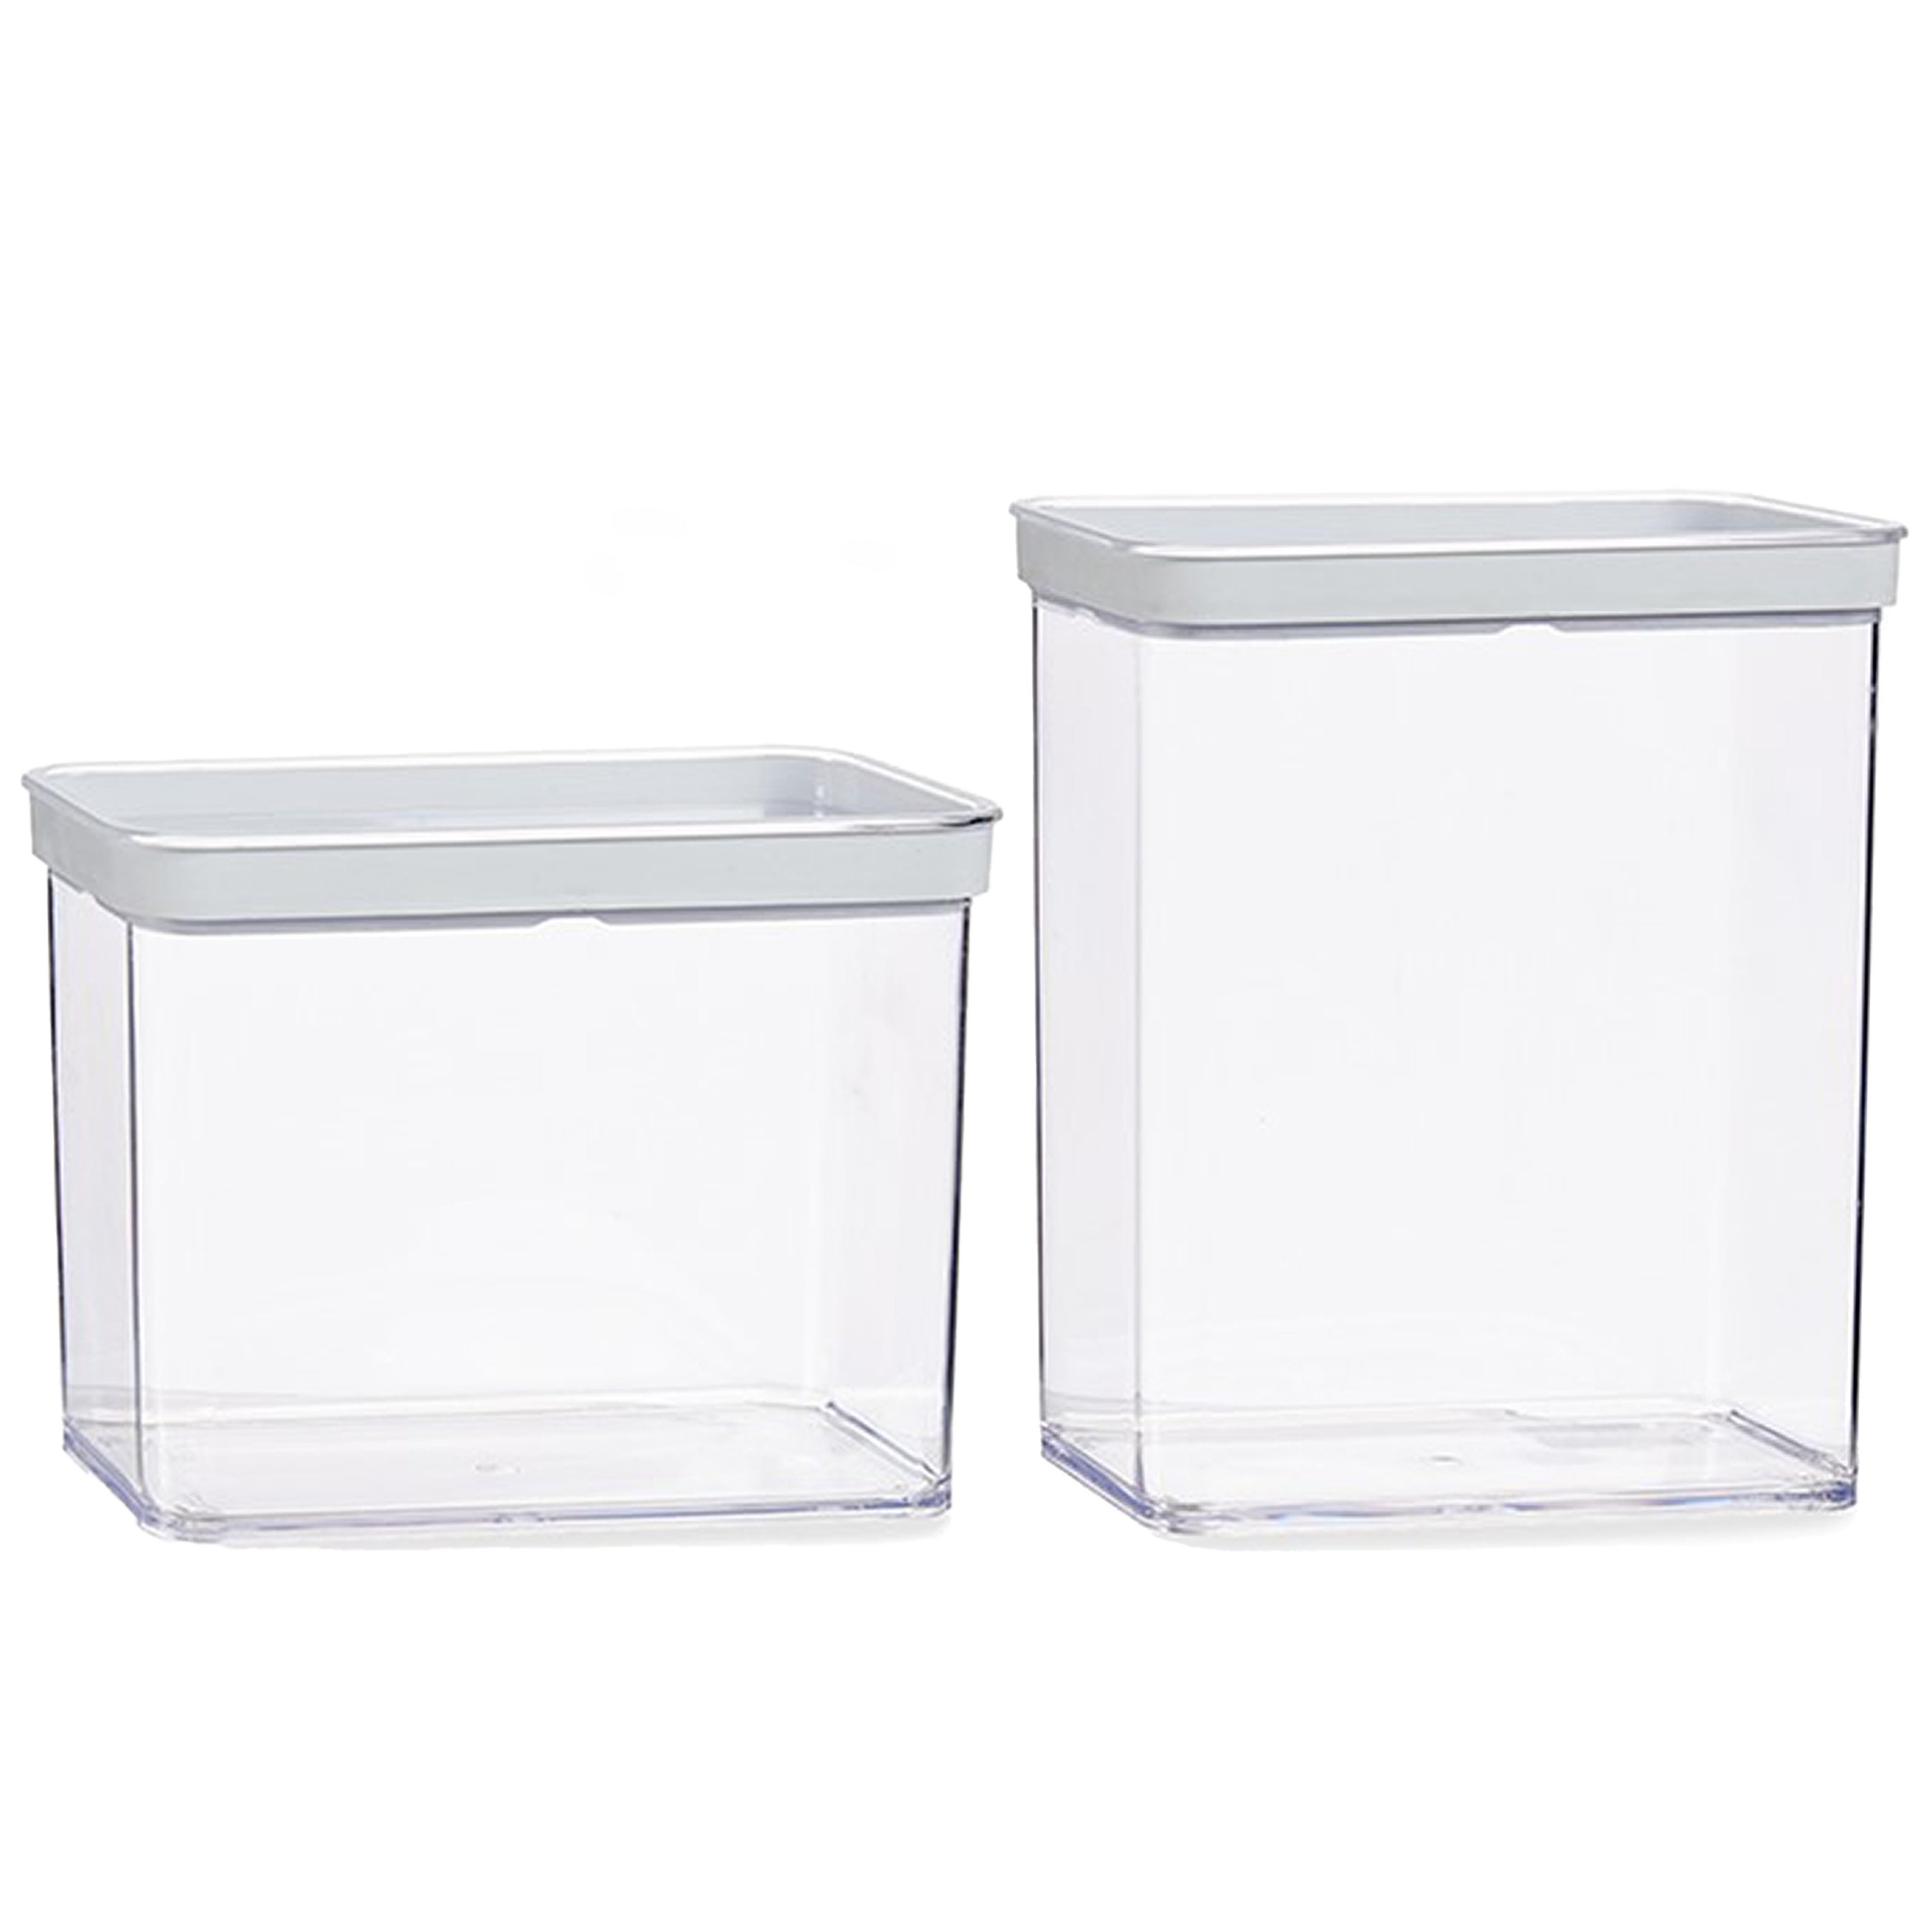 Gondol Plastics 5x stuks keuken voorraad potten/bakjes set met deksel 2.2 en 3.3 liter -